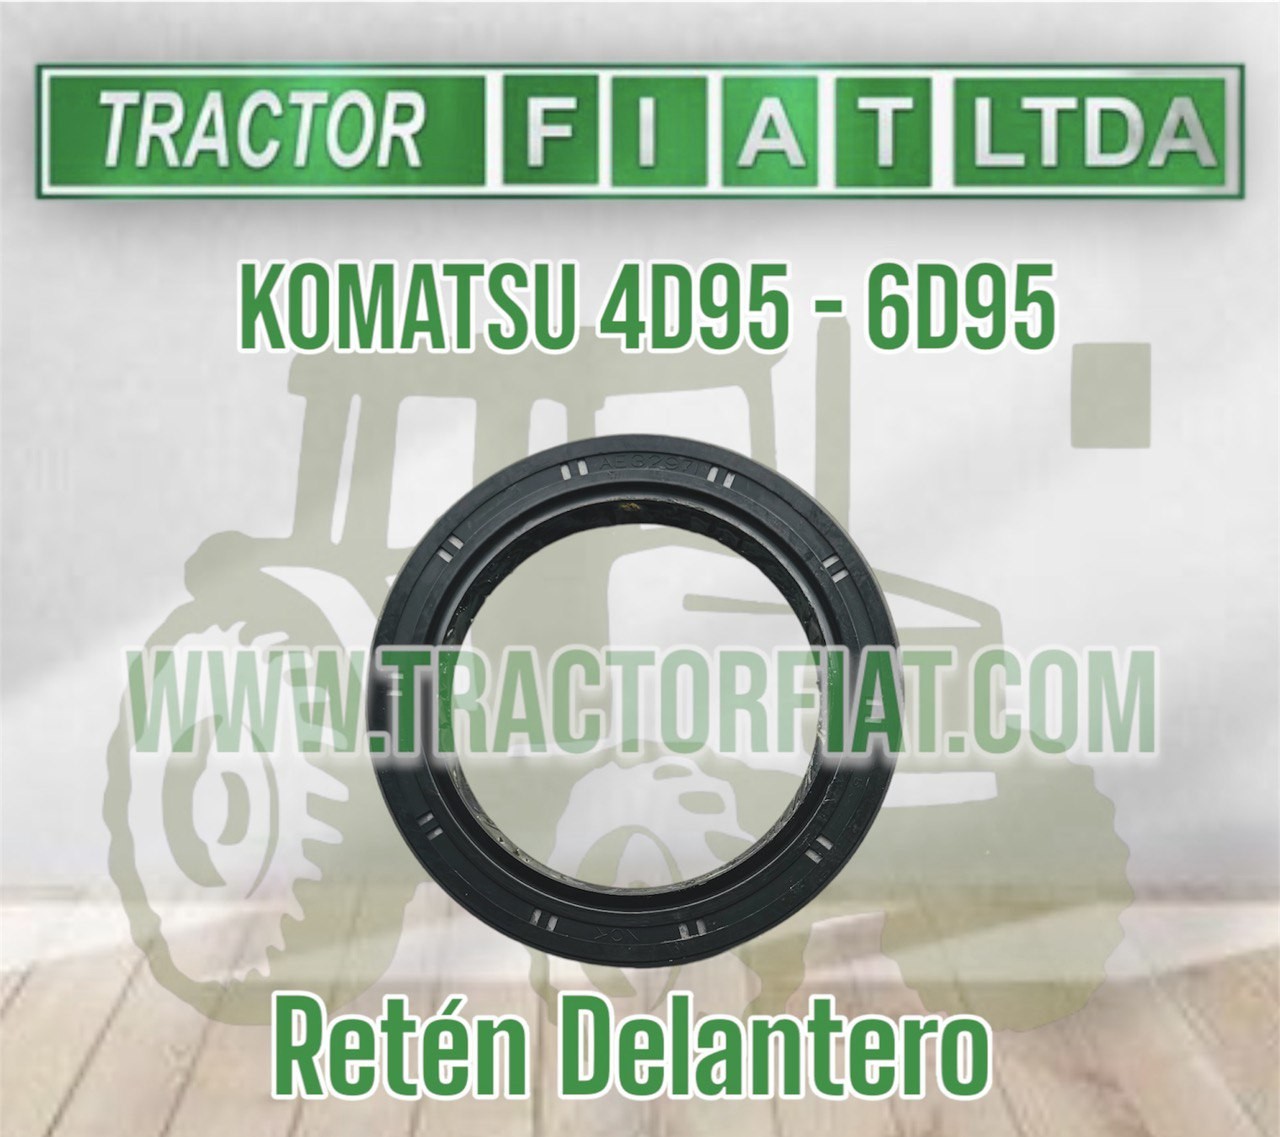 RETEN DELANTERO - MOTOR KOMATSU 6D95/4D95